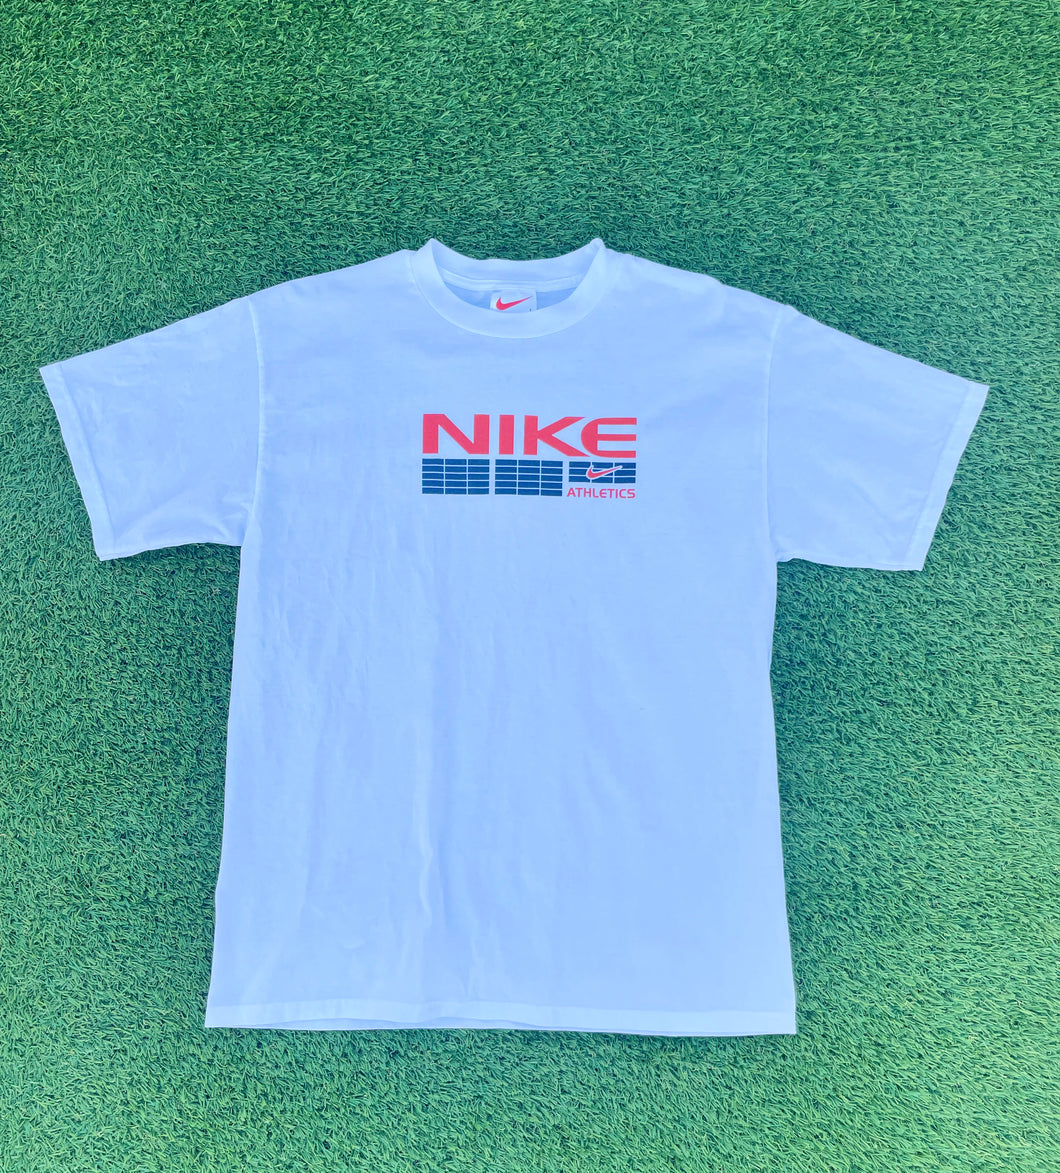 Vintage Nike White Tag T Shirt